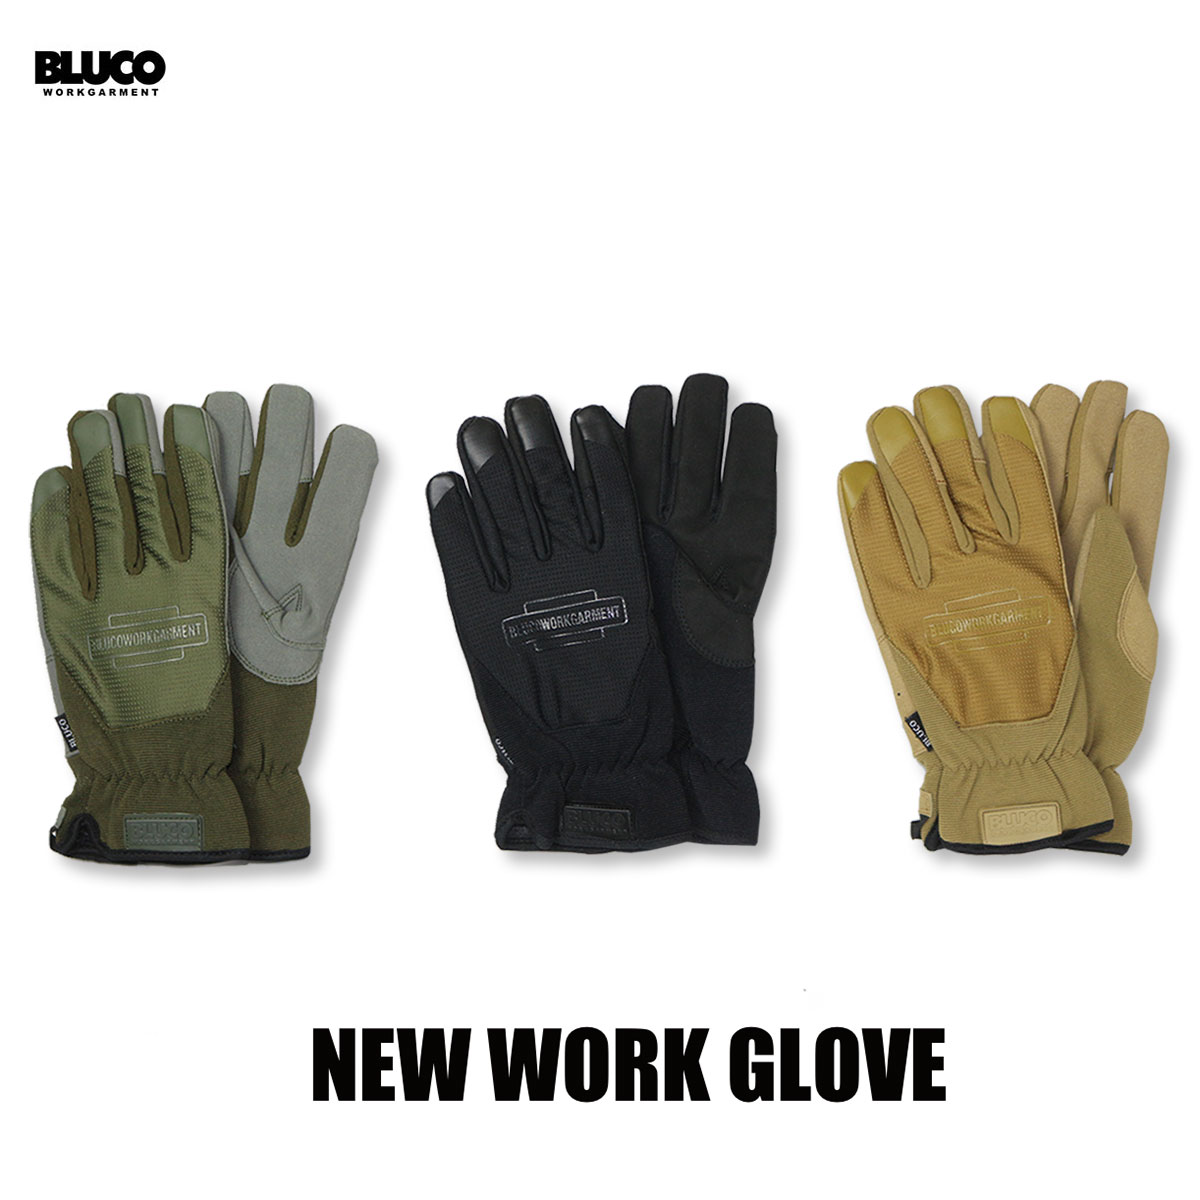 送料無料!!BLUCO(ブルコ) OL-302 NEW WORK GLOVE 3色(ブラック・オリーブ・コヨーテ)